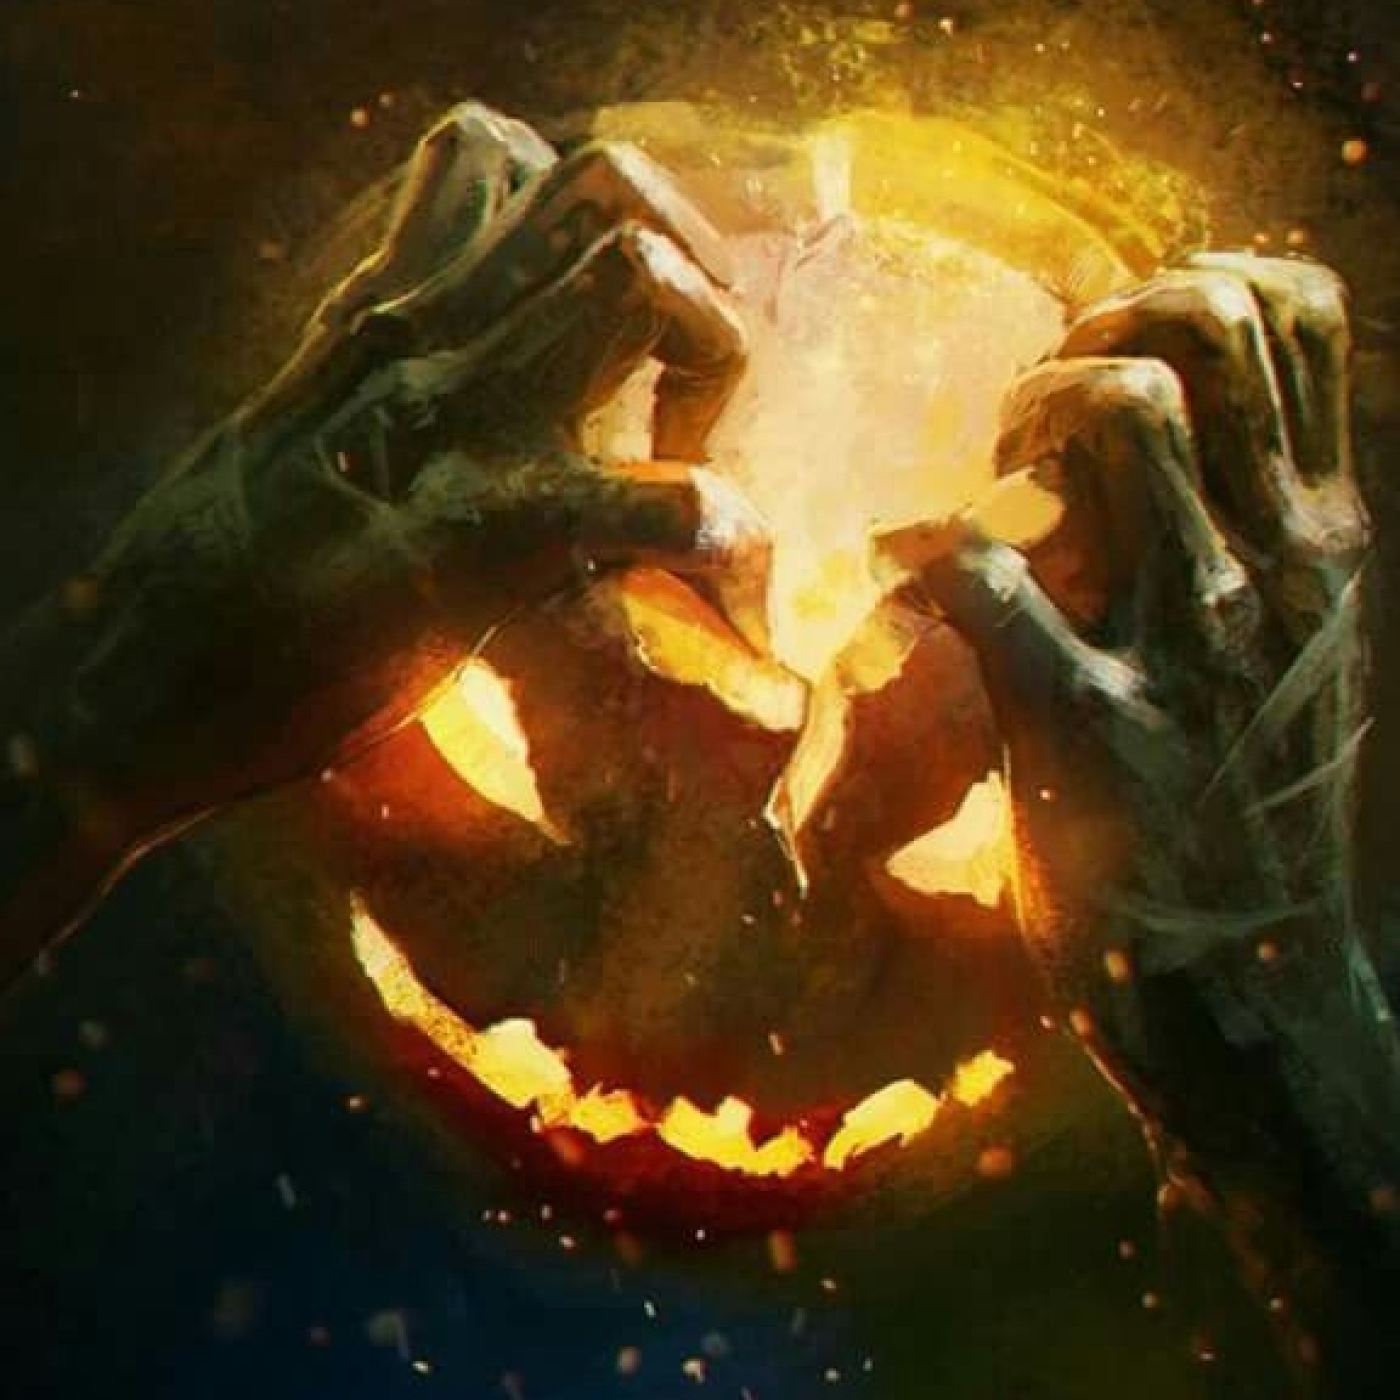 Especial Halloween: ”La Leyenda de Jack-o’-lantern”, de Ignacio Pilloneto y Lucas Buchel